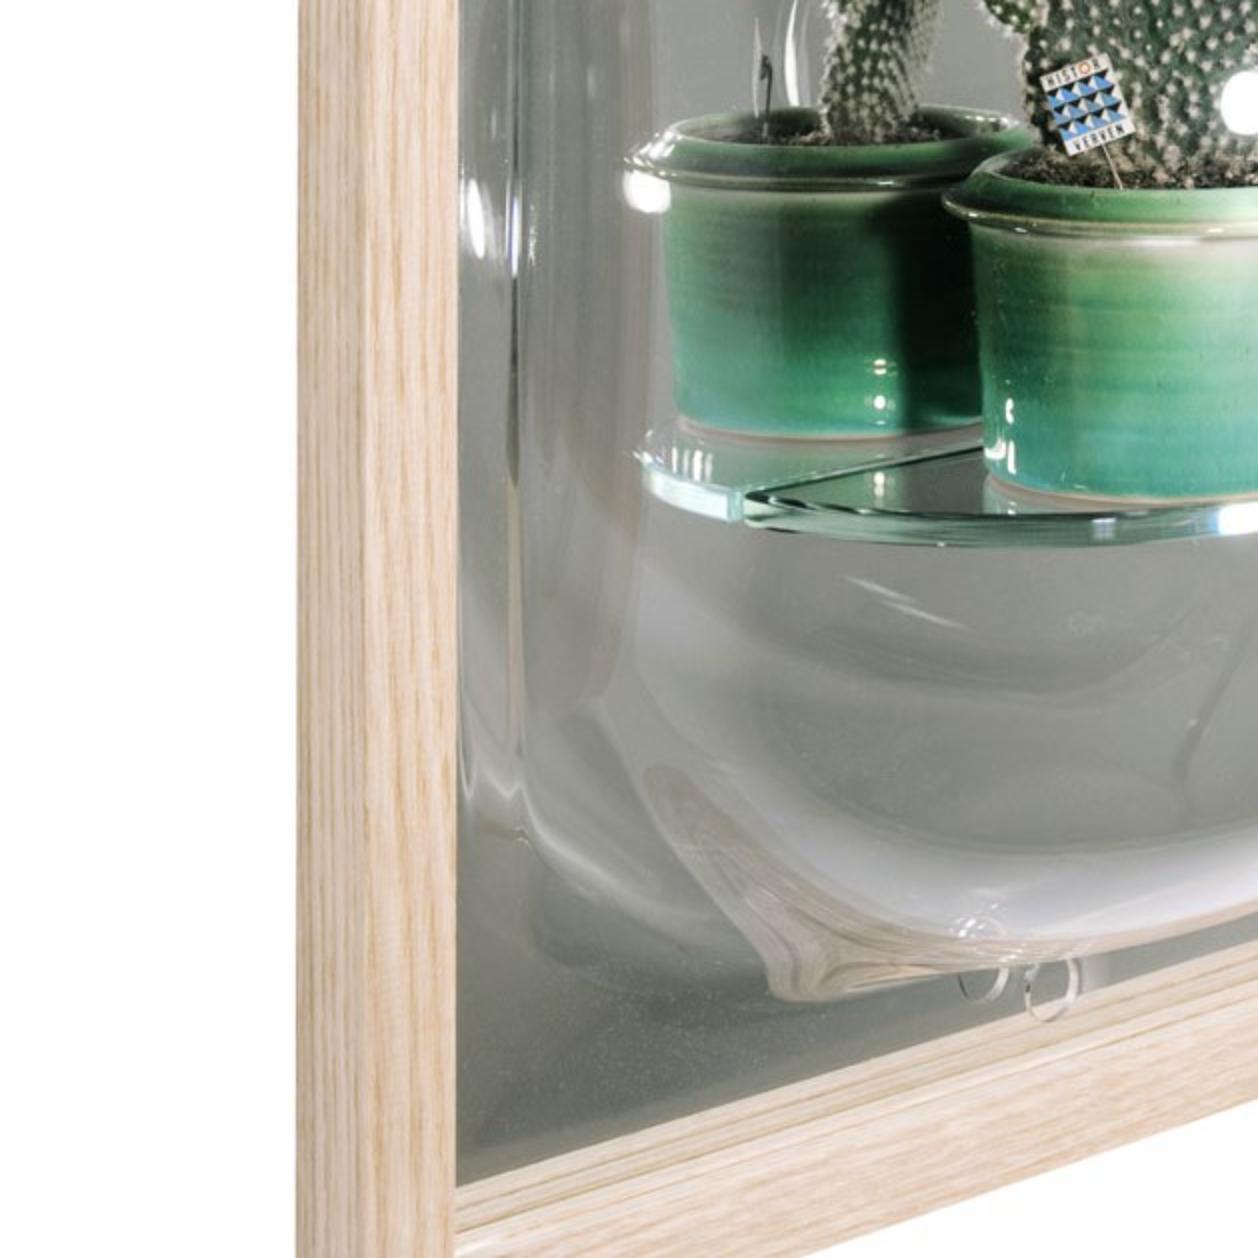 Miroir de vitrine régulier par Studio Thier & van Daalen
Dimensions : L 42 x P 20 x H 50 cm
Matériaux : frêne, verre acrylique recyclé.
Également disponible : étagère en verre en option (non incluse avec le miroir).

Ces miroirs élégants avec cadre